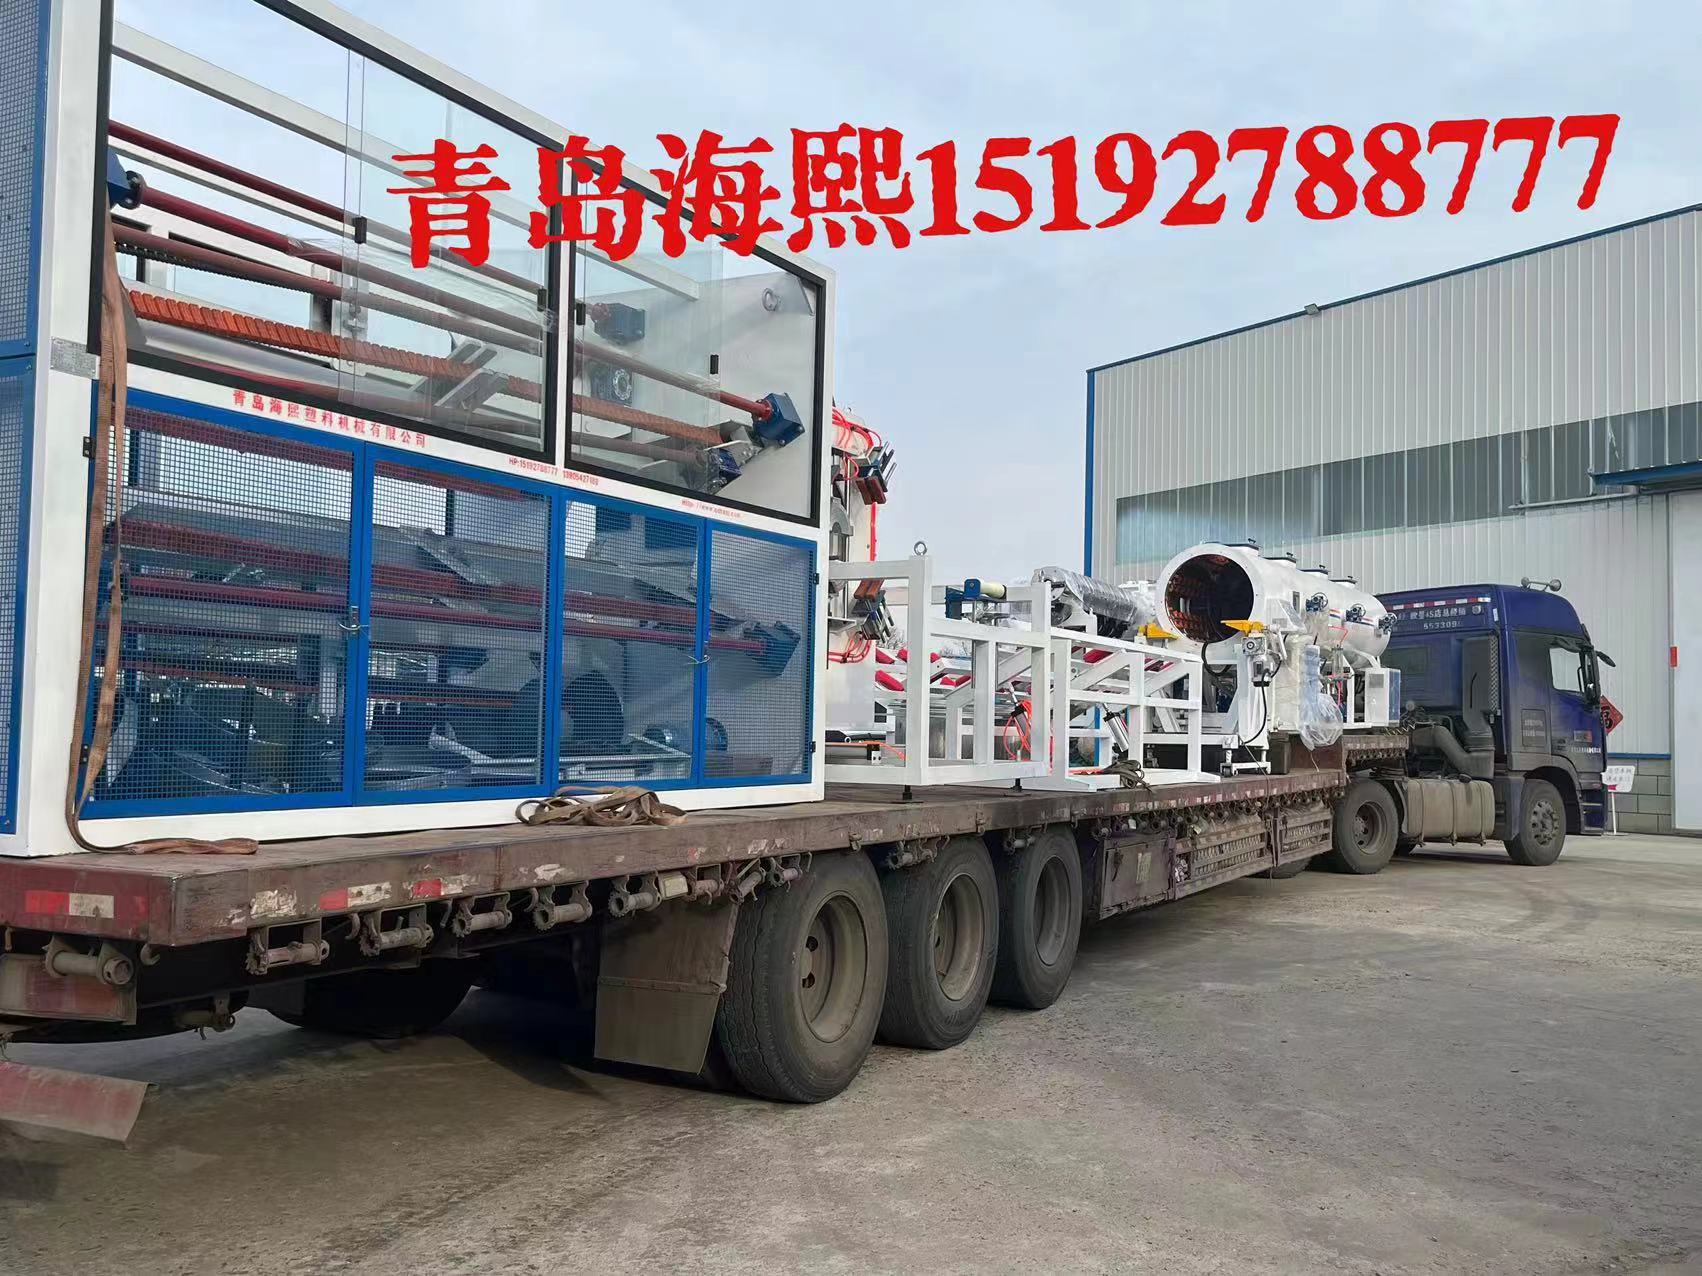 Cangzhou Pengkun construction machinery pipe fitti